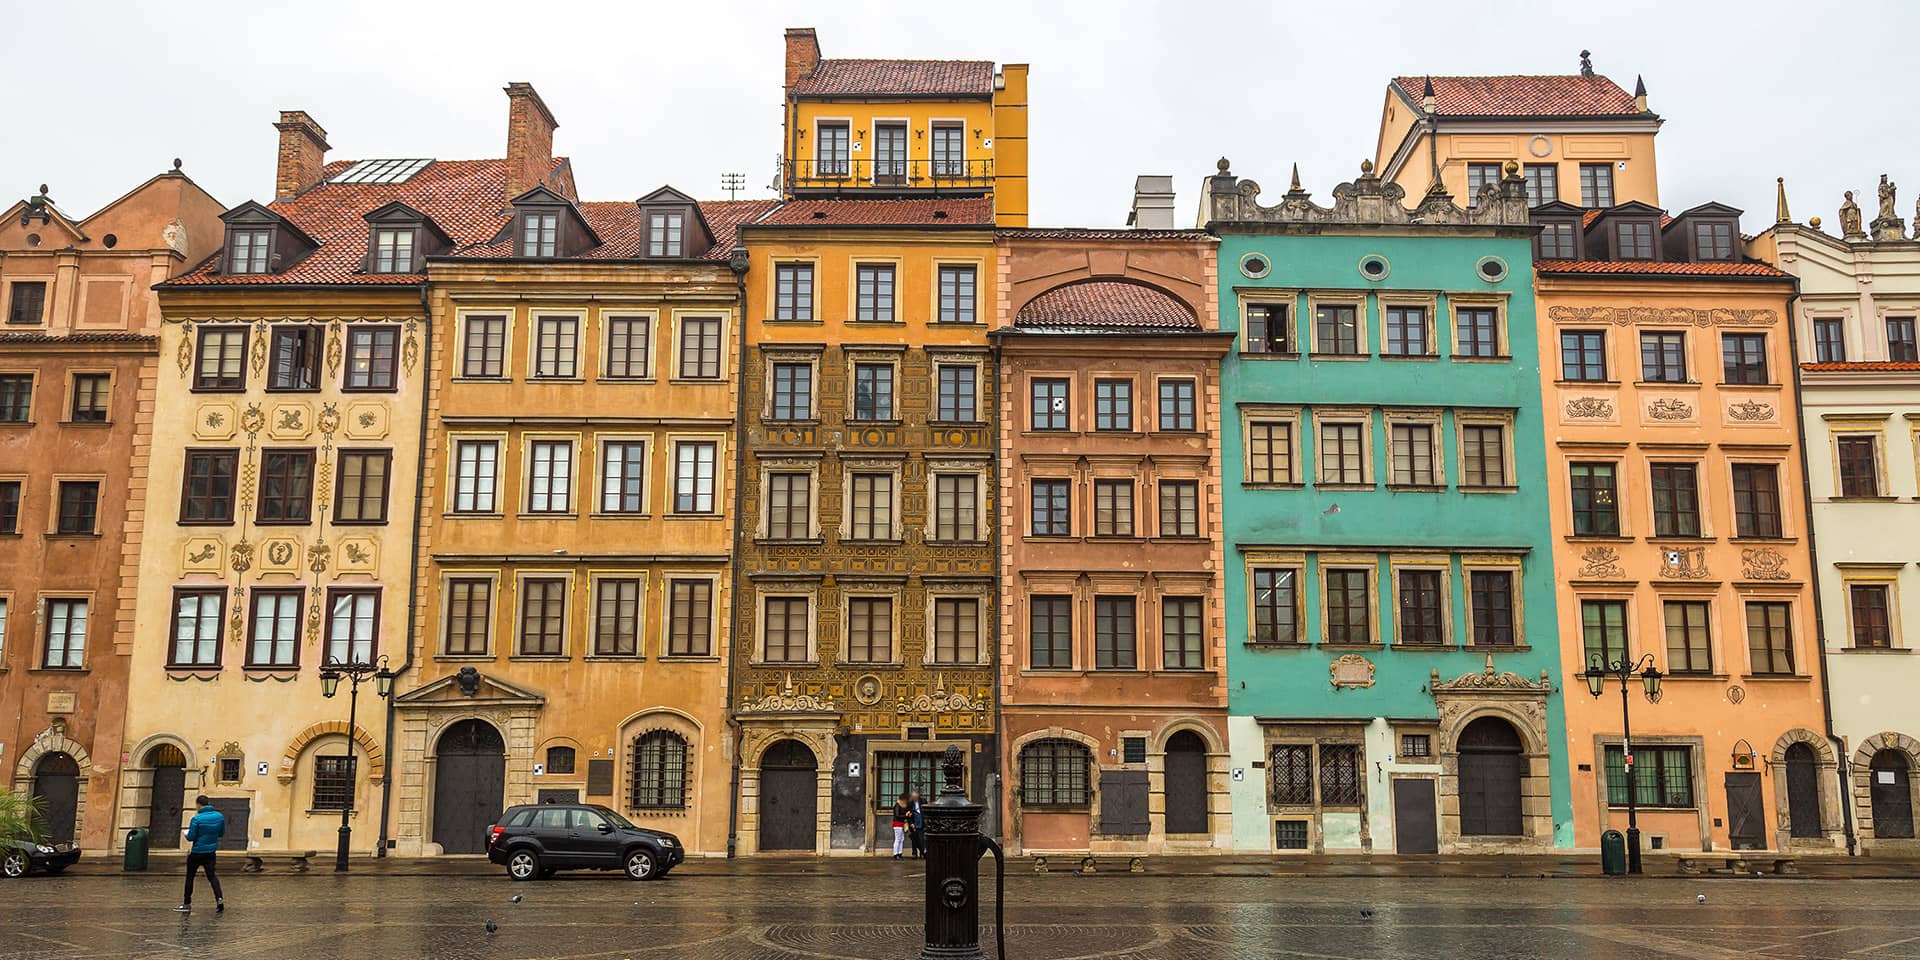 Billede fra den gamle bydel i Warszawa i Polen